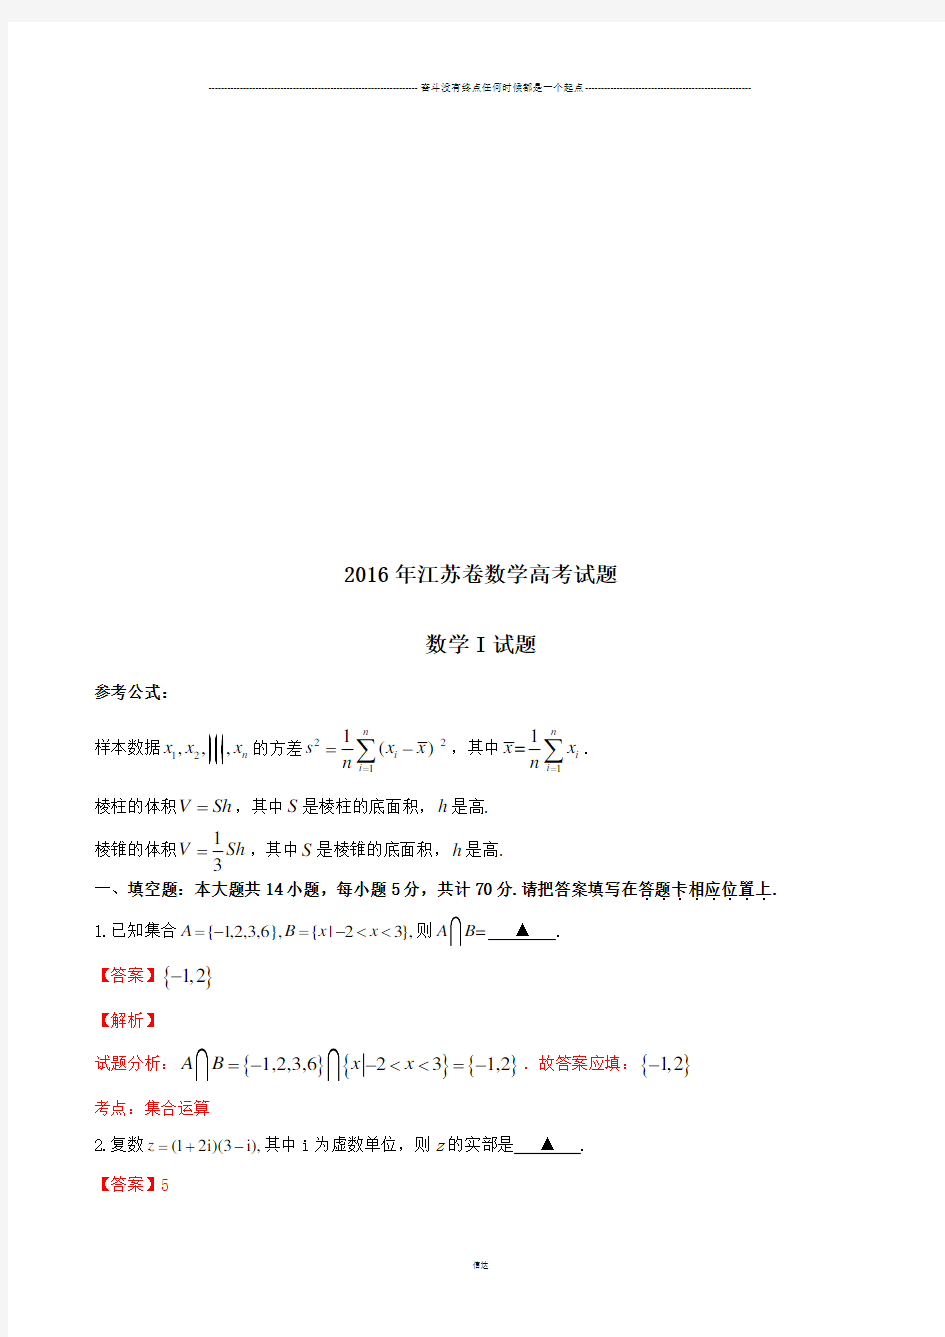 高考江苏卷数学试题解析(正式版)(解析版)